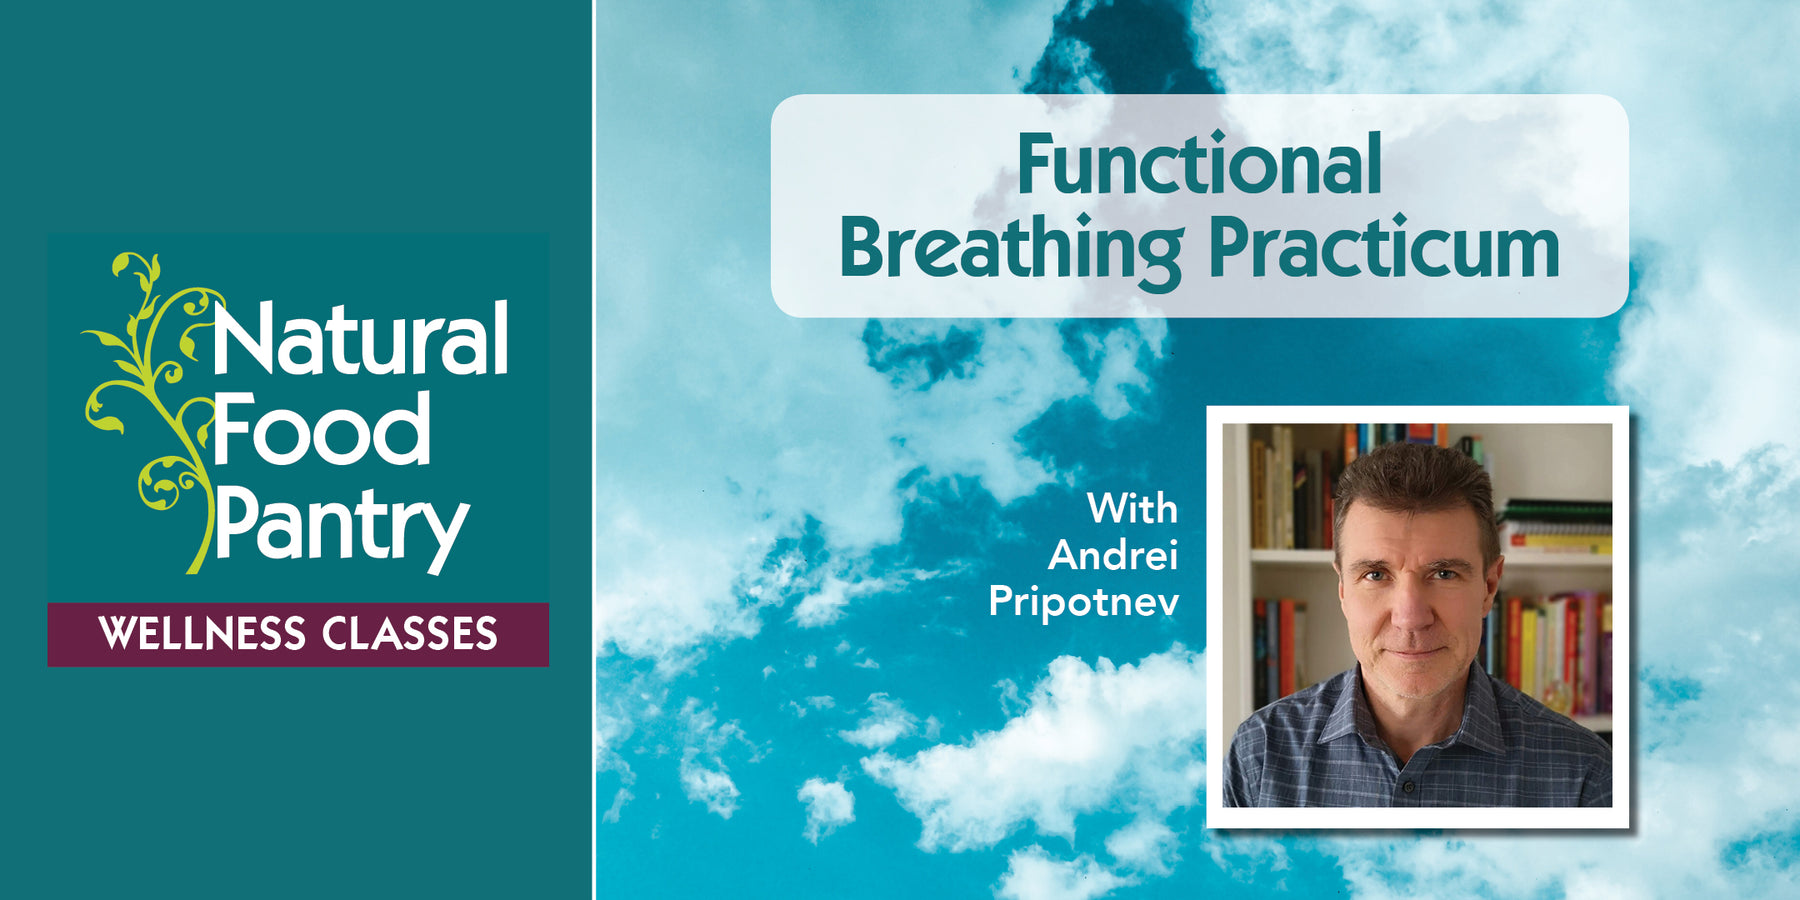 Apr 11: Functional Breathing Practicum